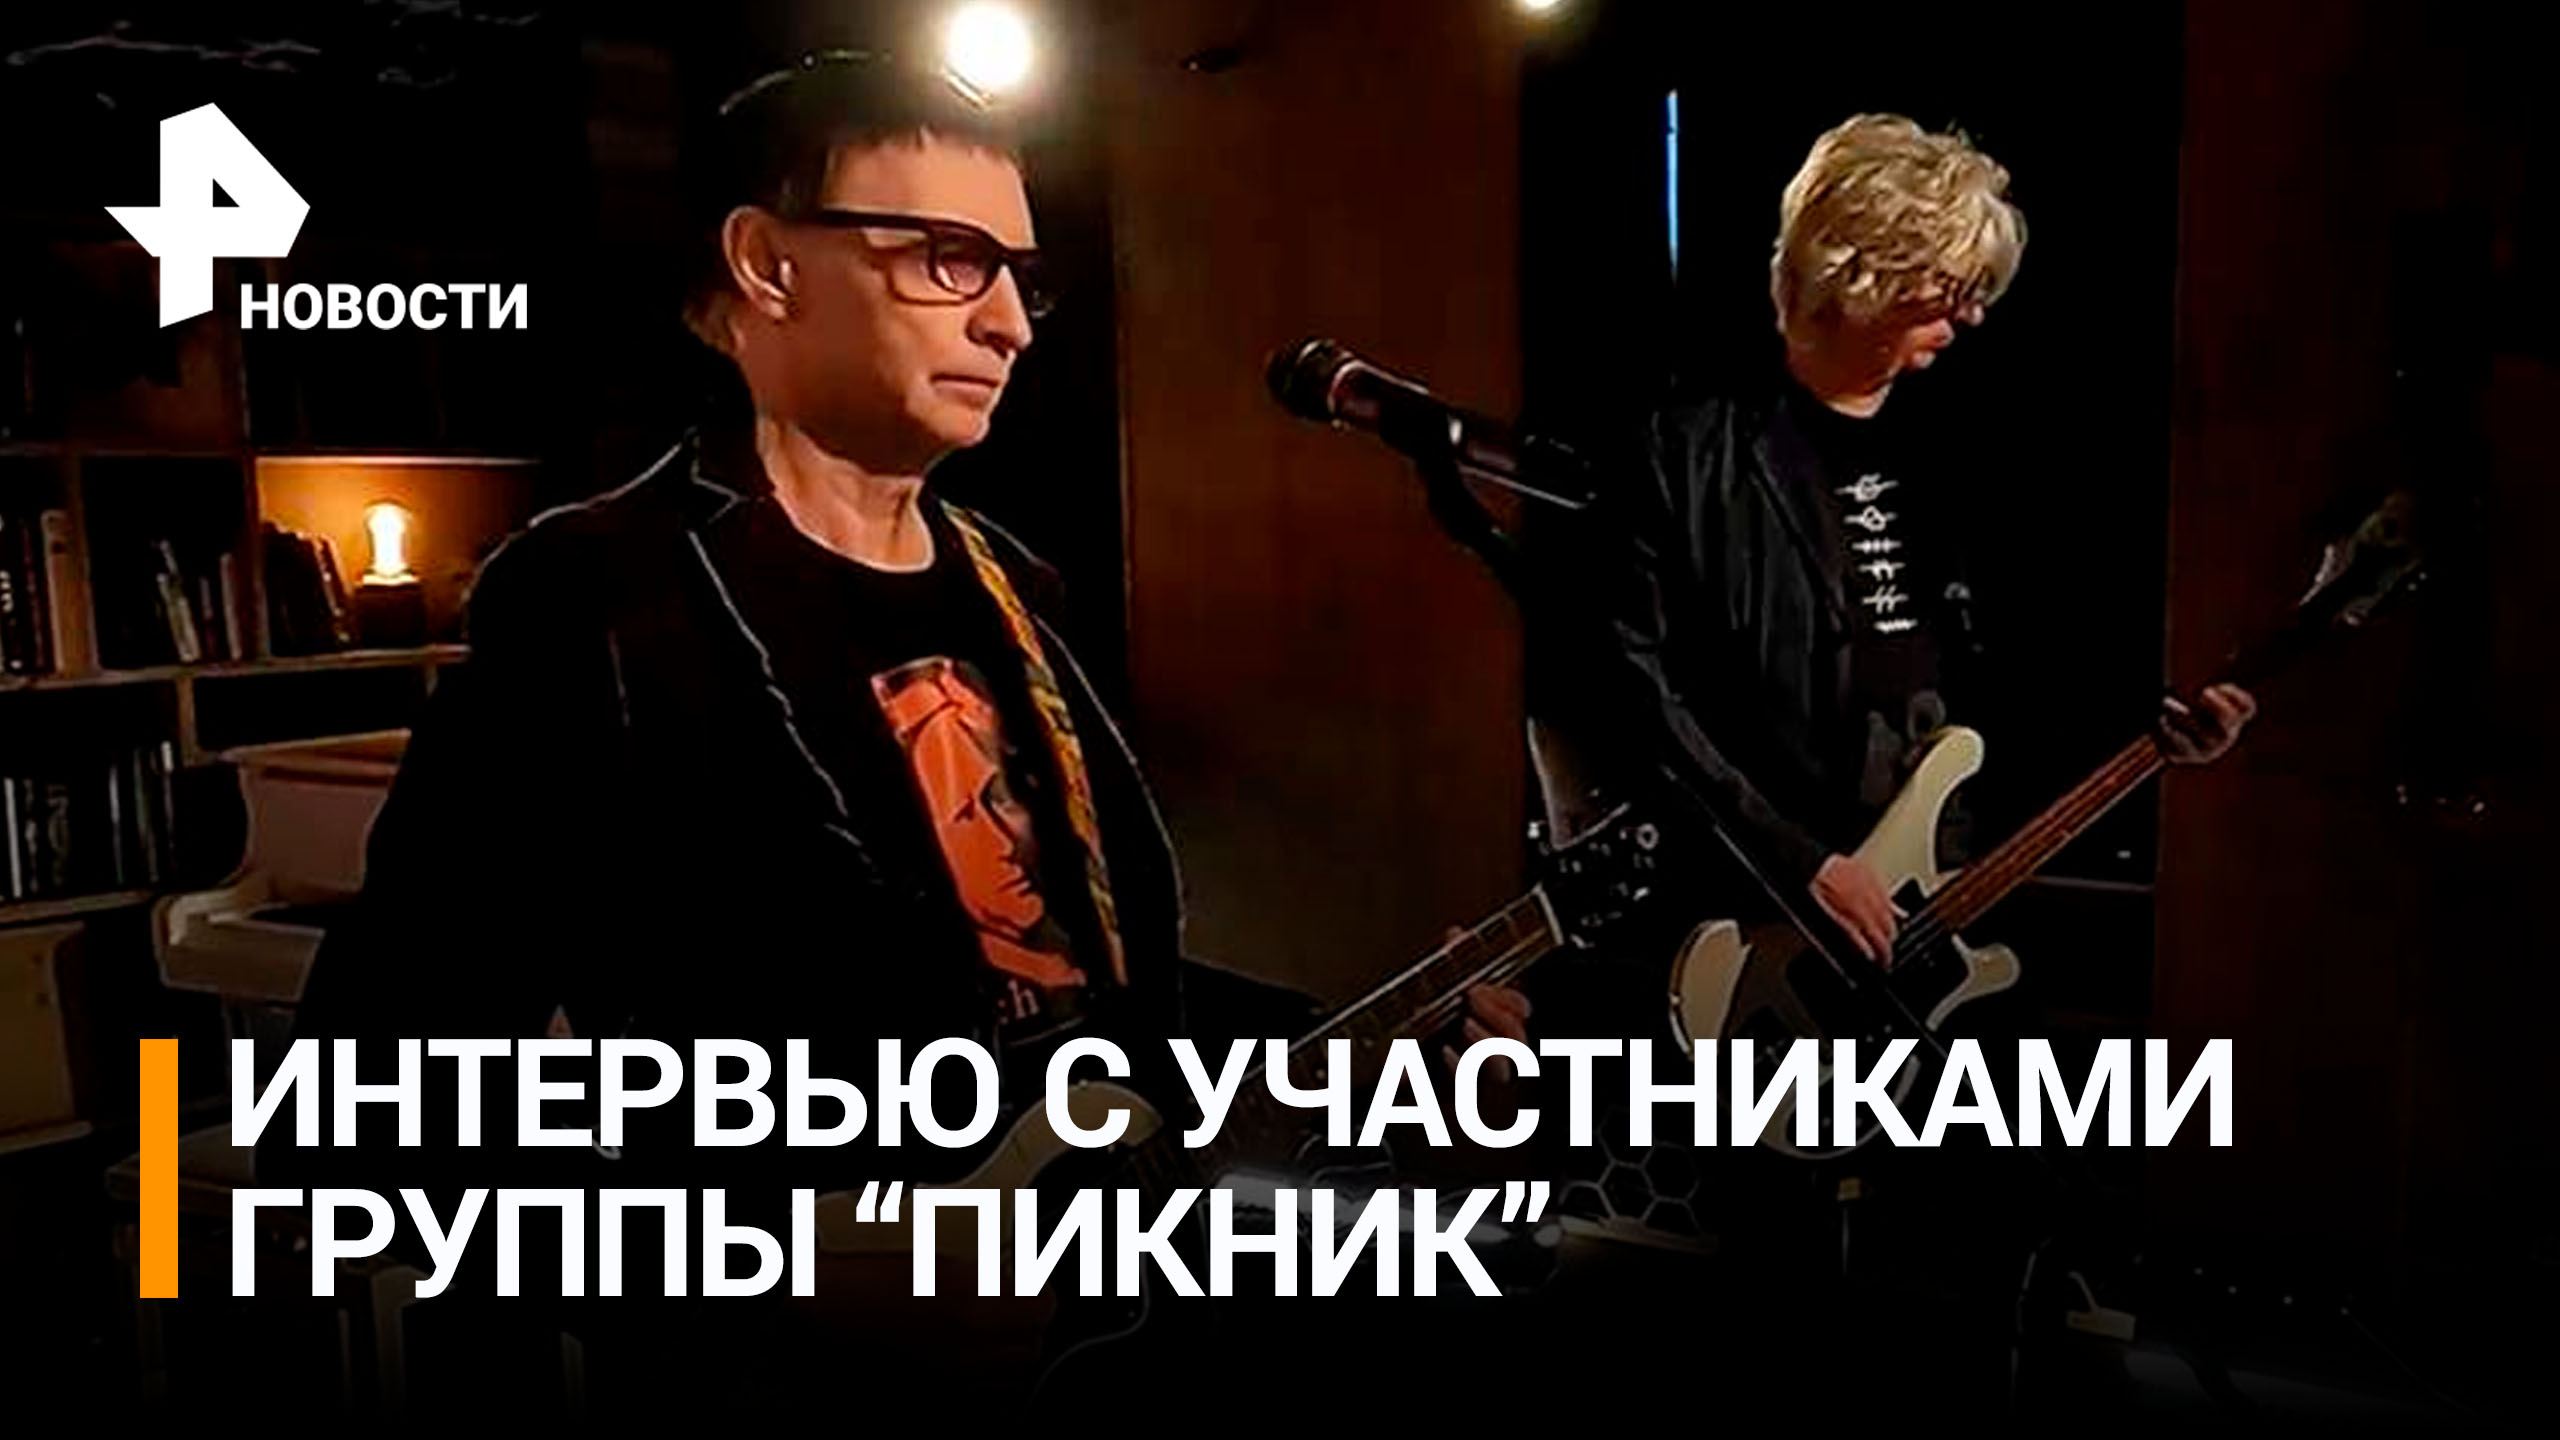 Рок-группа "Пикник" в Москве и Санкт-Петербурге представит лучшее шоу за всю историю существования